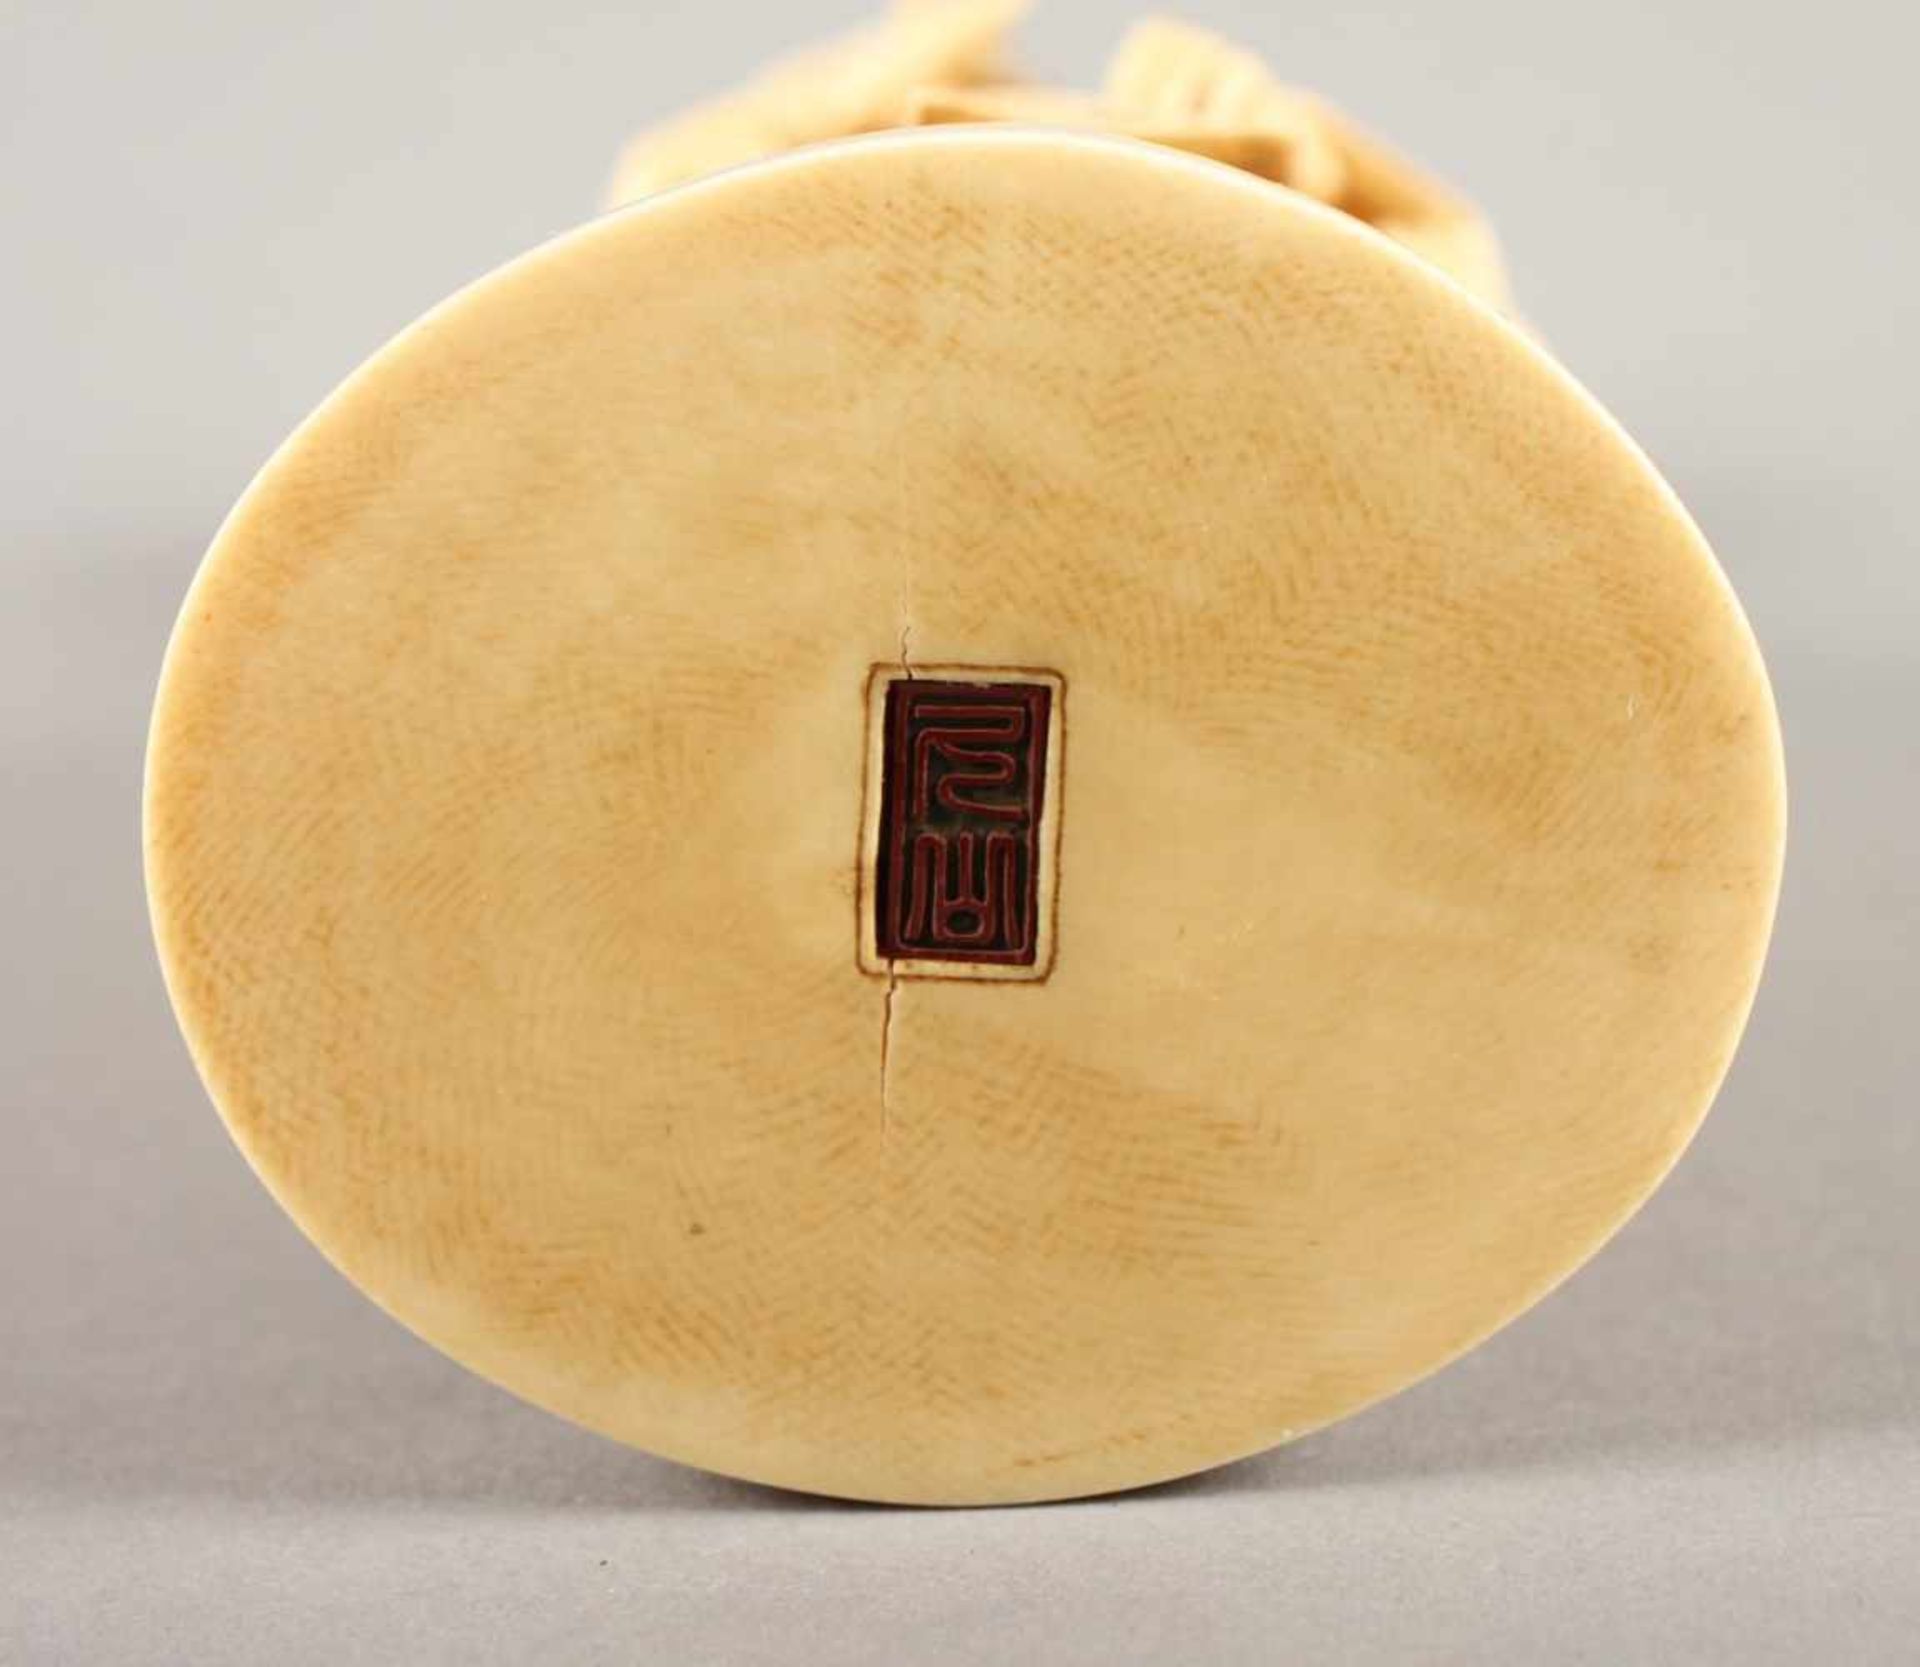 GROSSES OKIMONO "SAMURAI", Elfenbein, sehr fein geschnitzt, auf einer runden Sockelplatte steht - Bild 6 aus 6